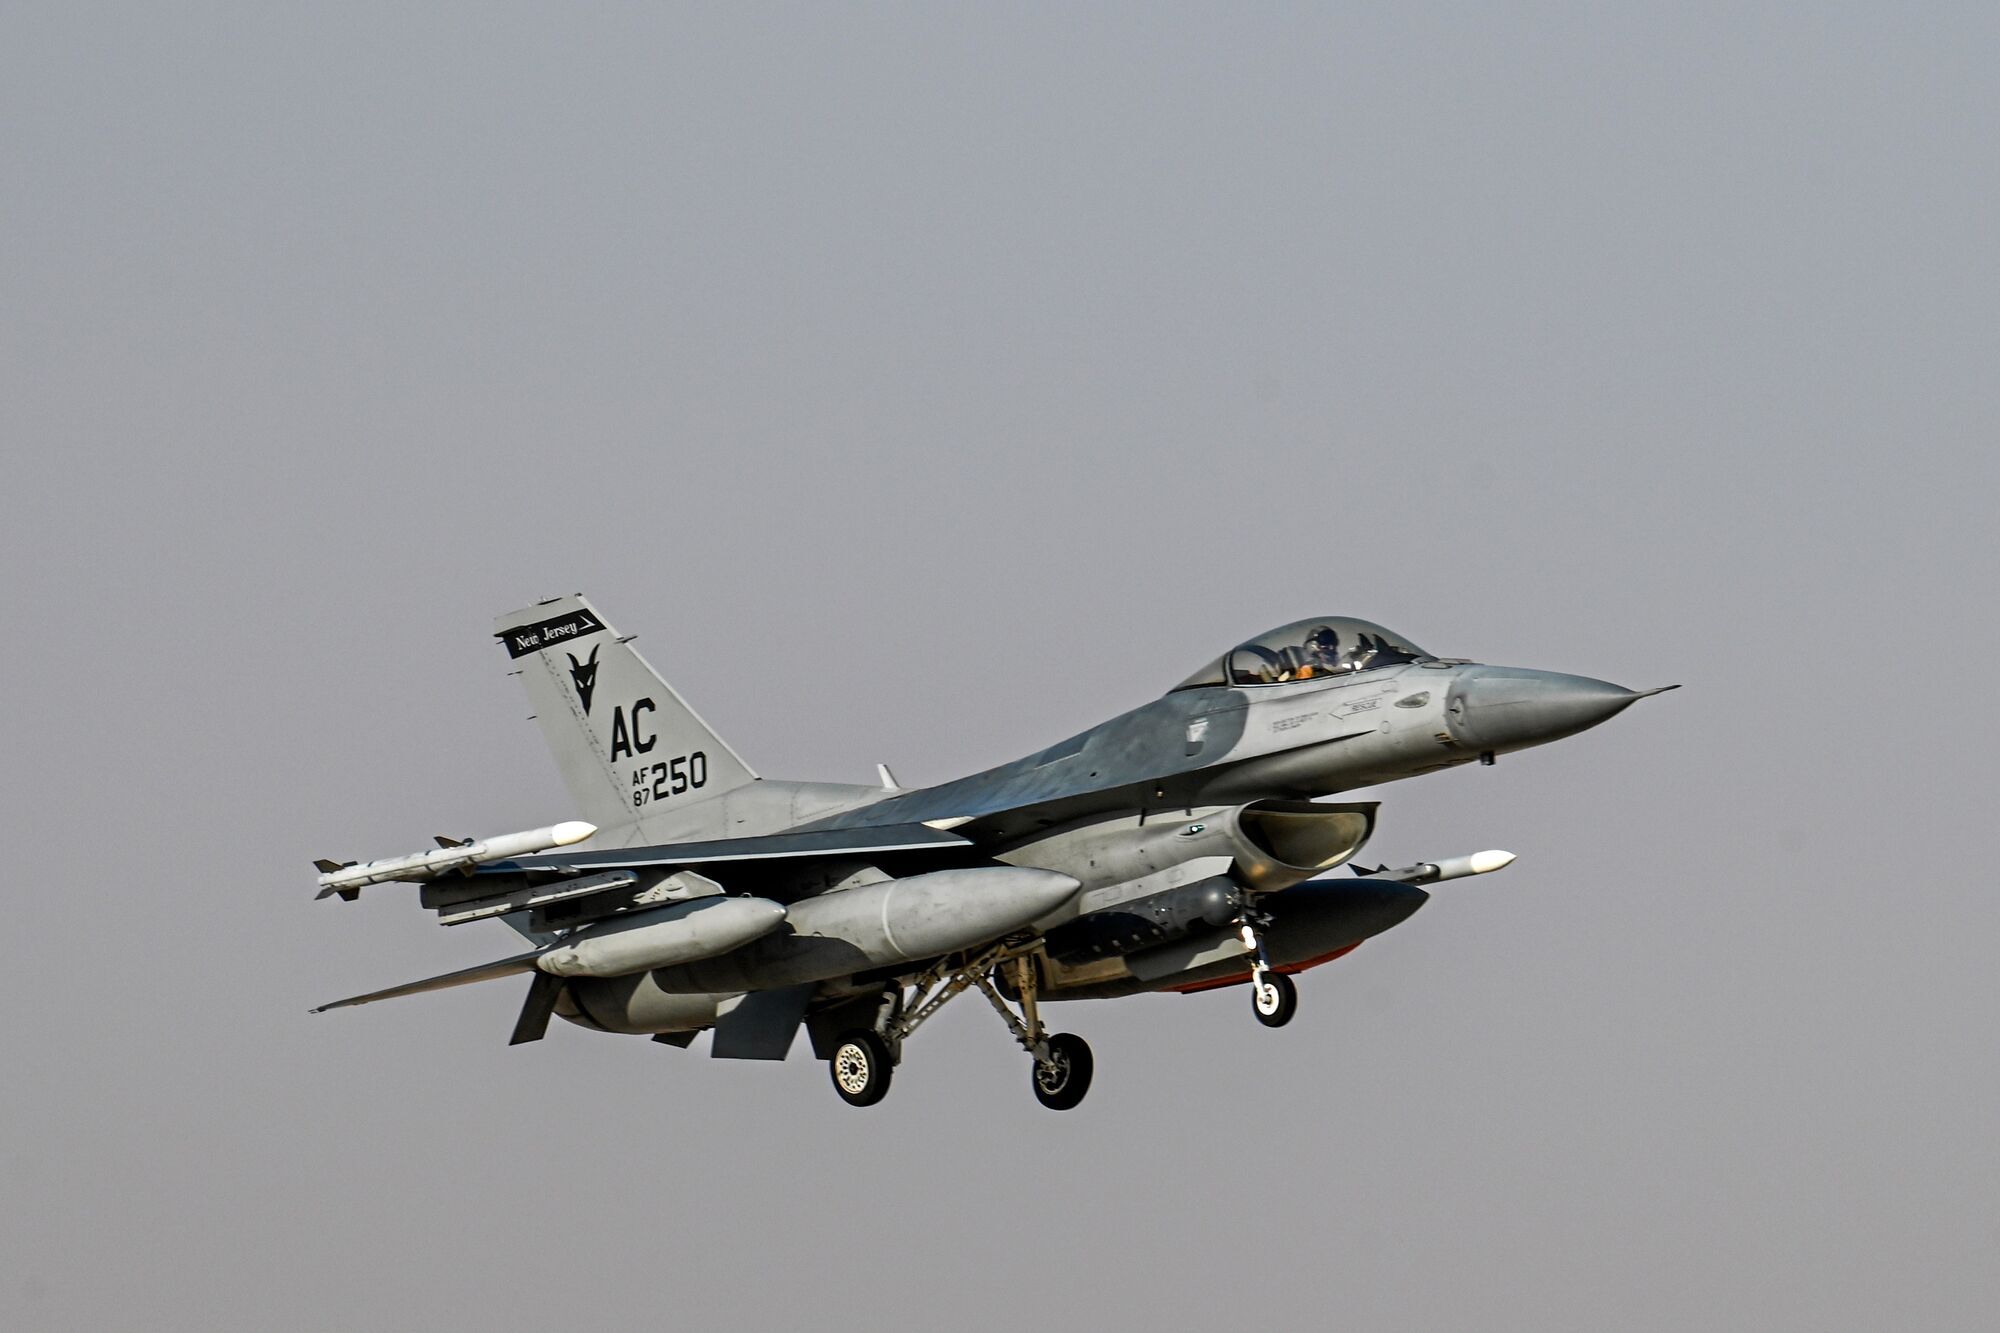 Чем отличаются самолеты Mirage 2000 и F-16: мнение экспертов